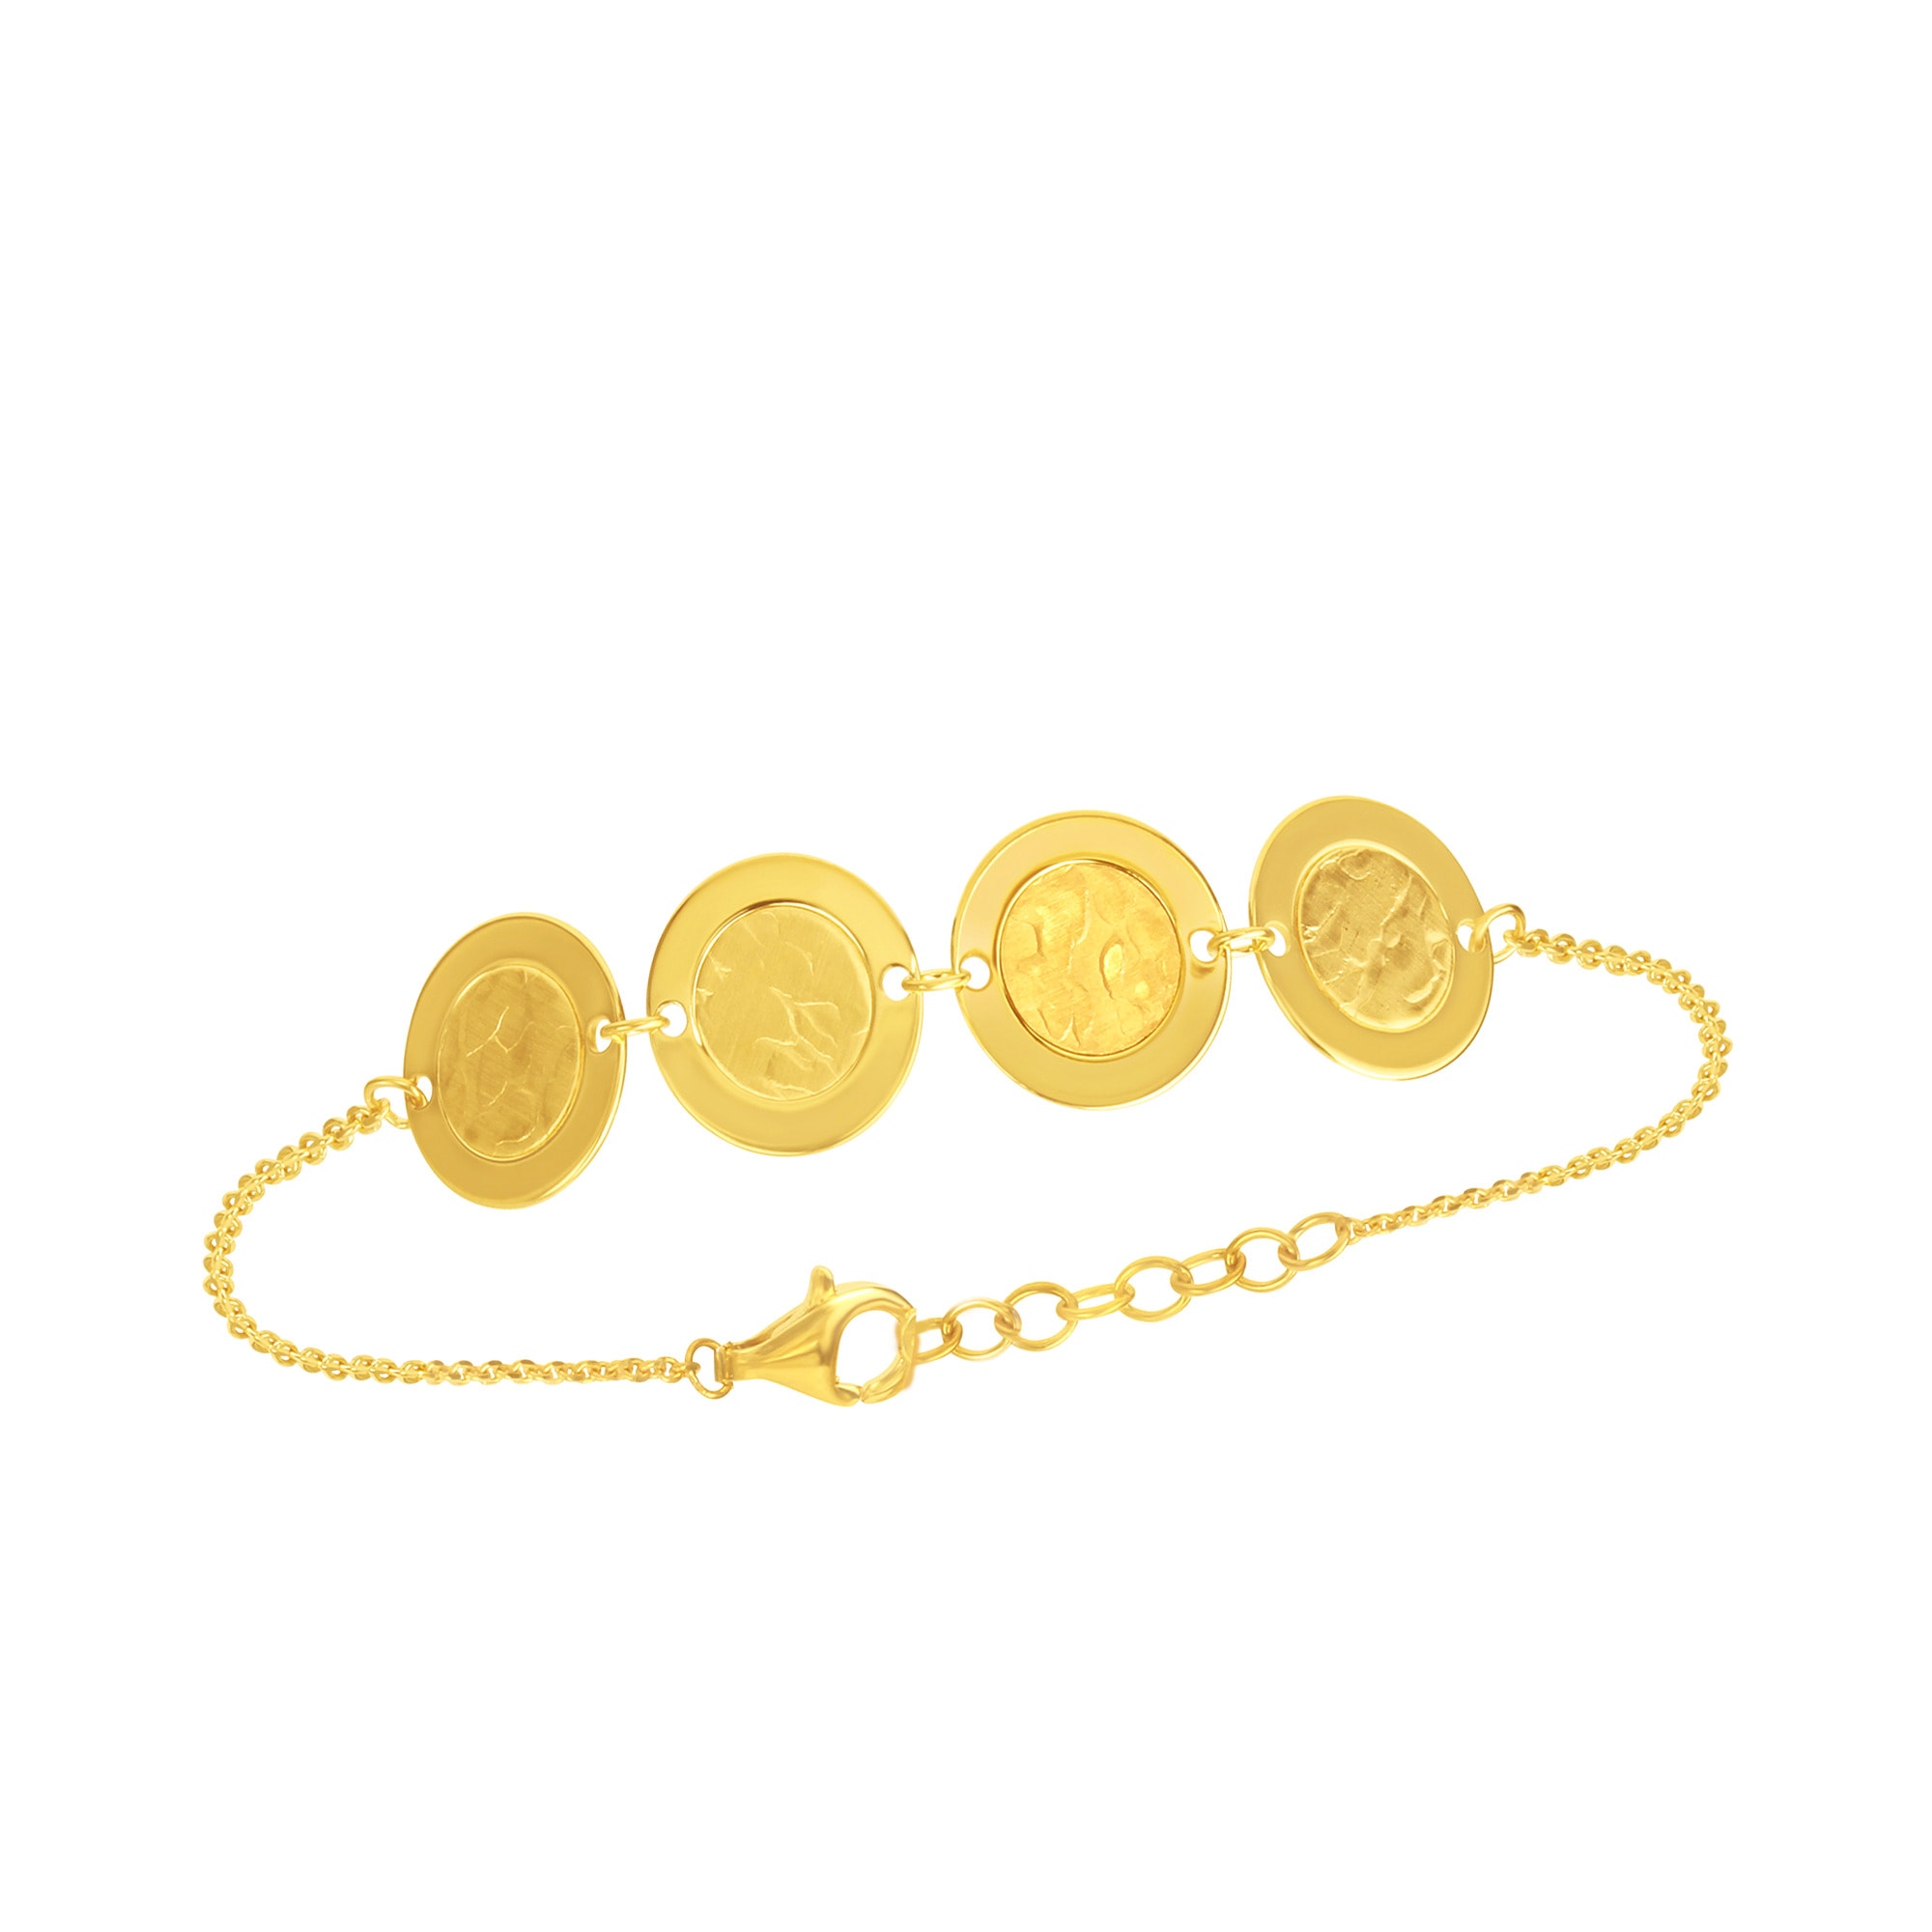 Silber CELESTA Plättchen »925 vergoldet« mit kaufen online strukturierten Armband